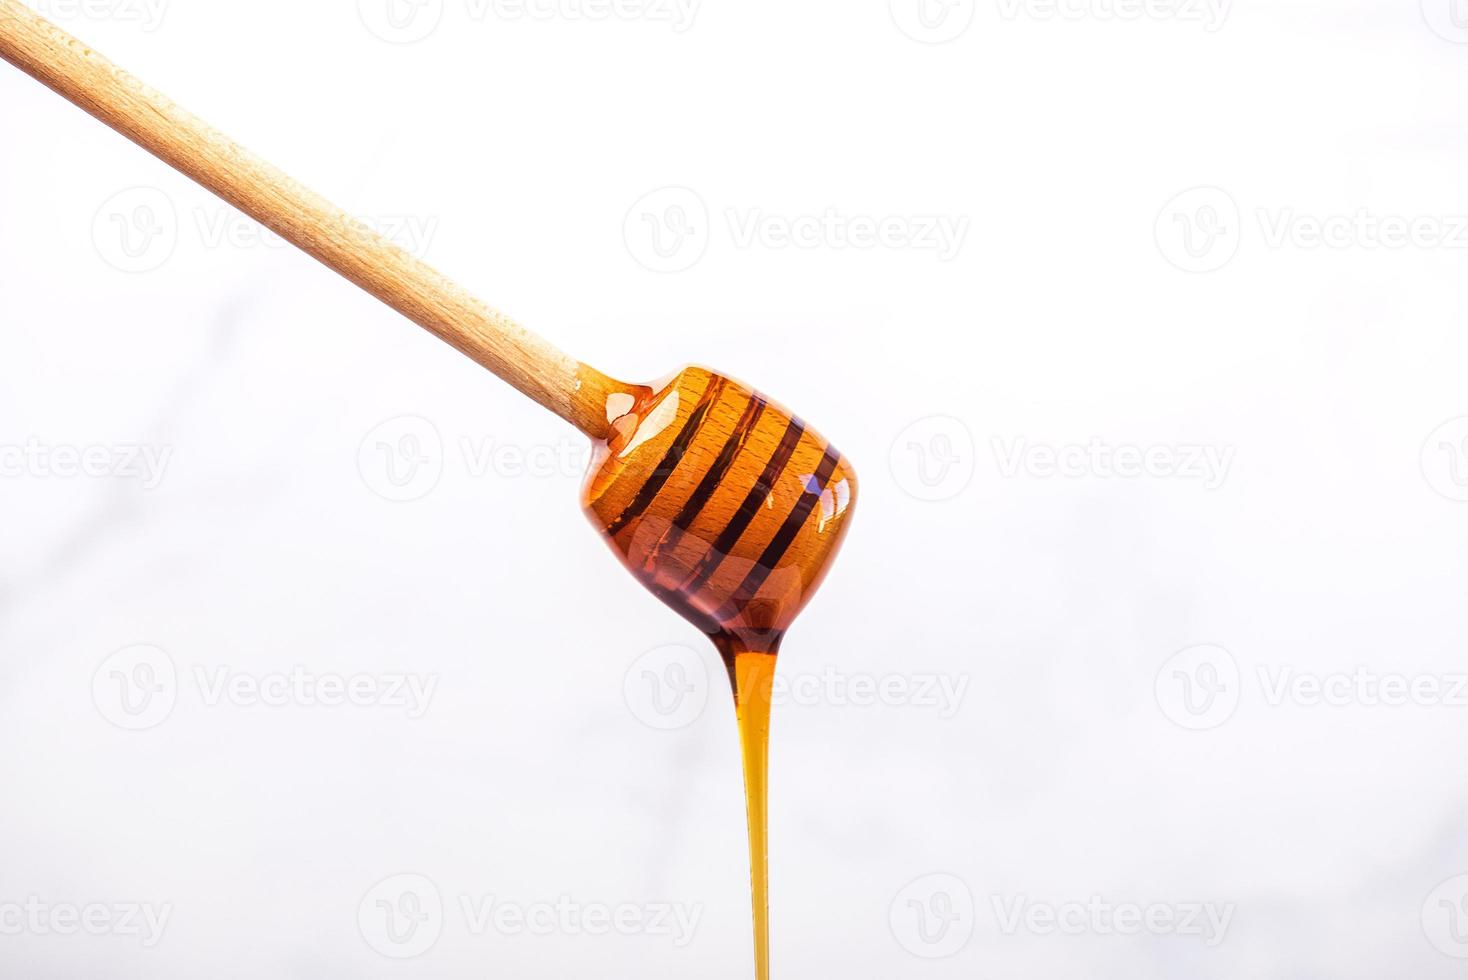 honung som droppar från en träslev för honung foto